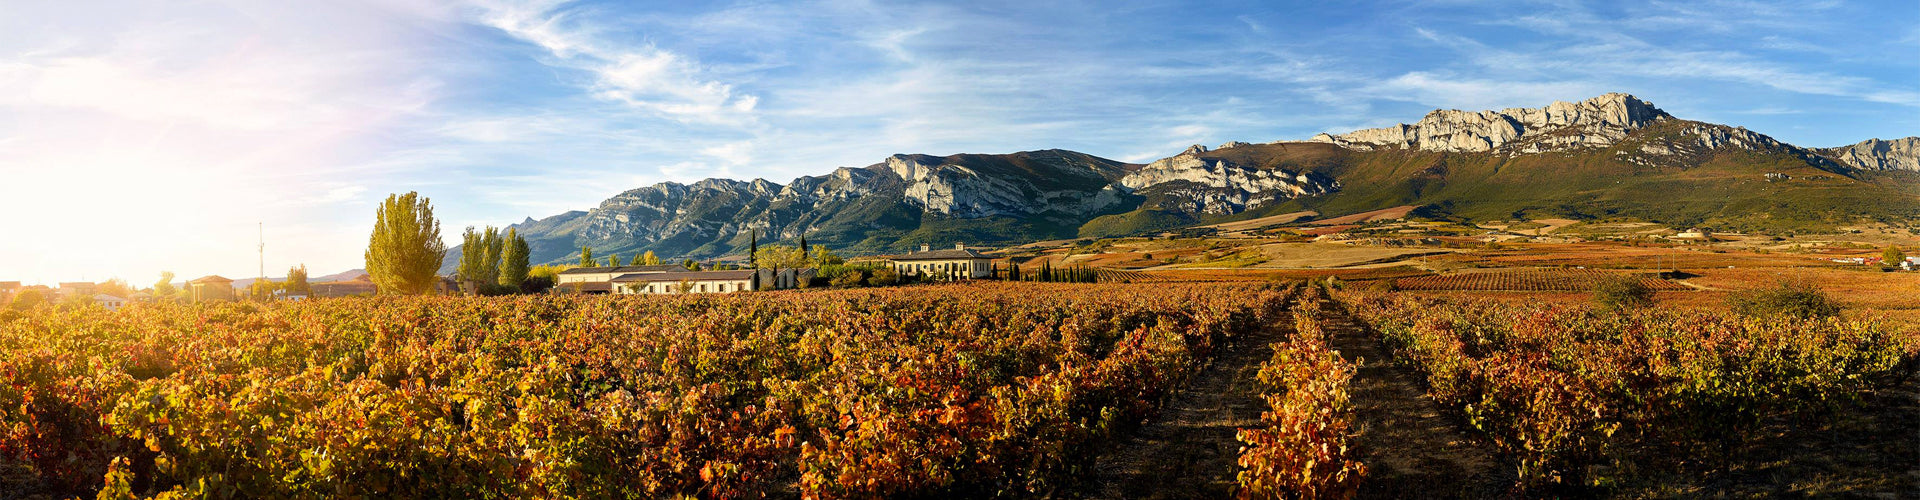 La Rioja Alta S.A Vineyards in Spain